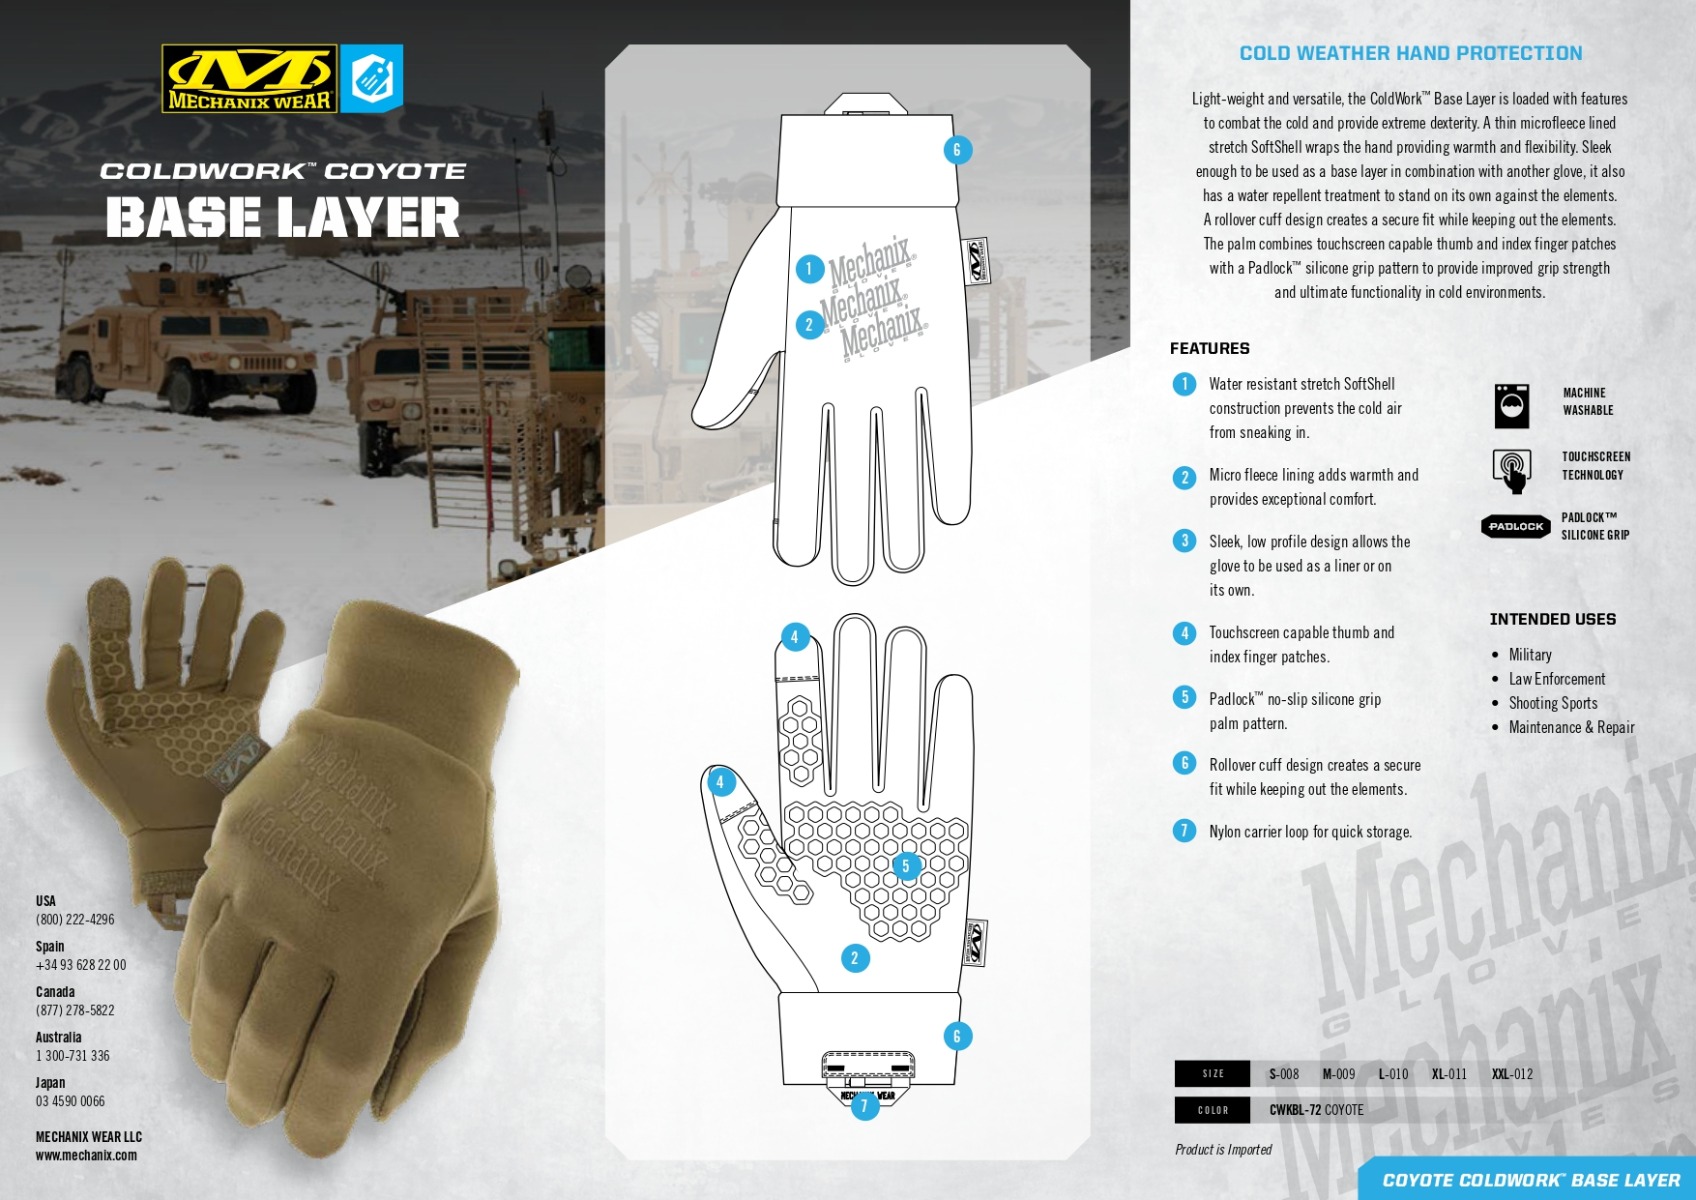 Zagotovite si vrhunsko zaščito pred mrazom in vlago z nepremočljivimi rokavicami ColdWorkTM Base Layer Coyote. Te vrhunske rokavice so odporne proti mrazu in nudijo vrhunski oprijem, kar jih dela idealne za številne dejavnosti na prostem. Od gradben